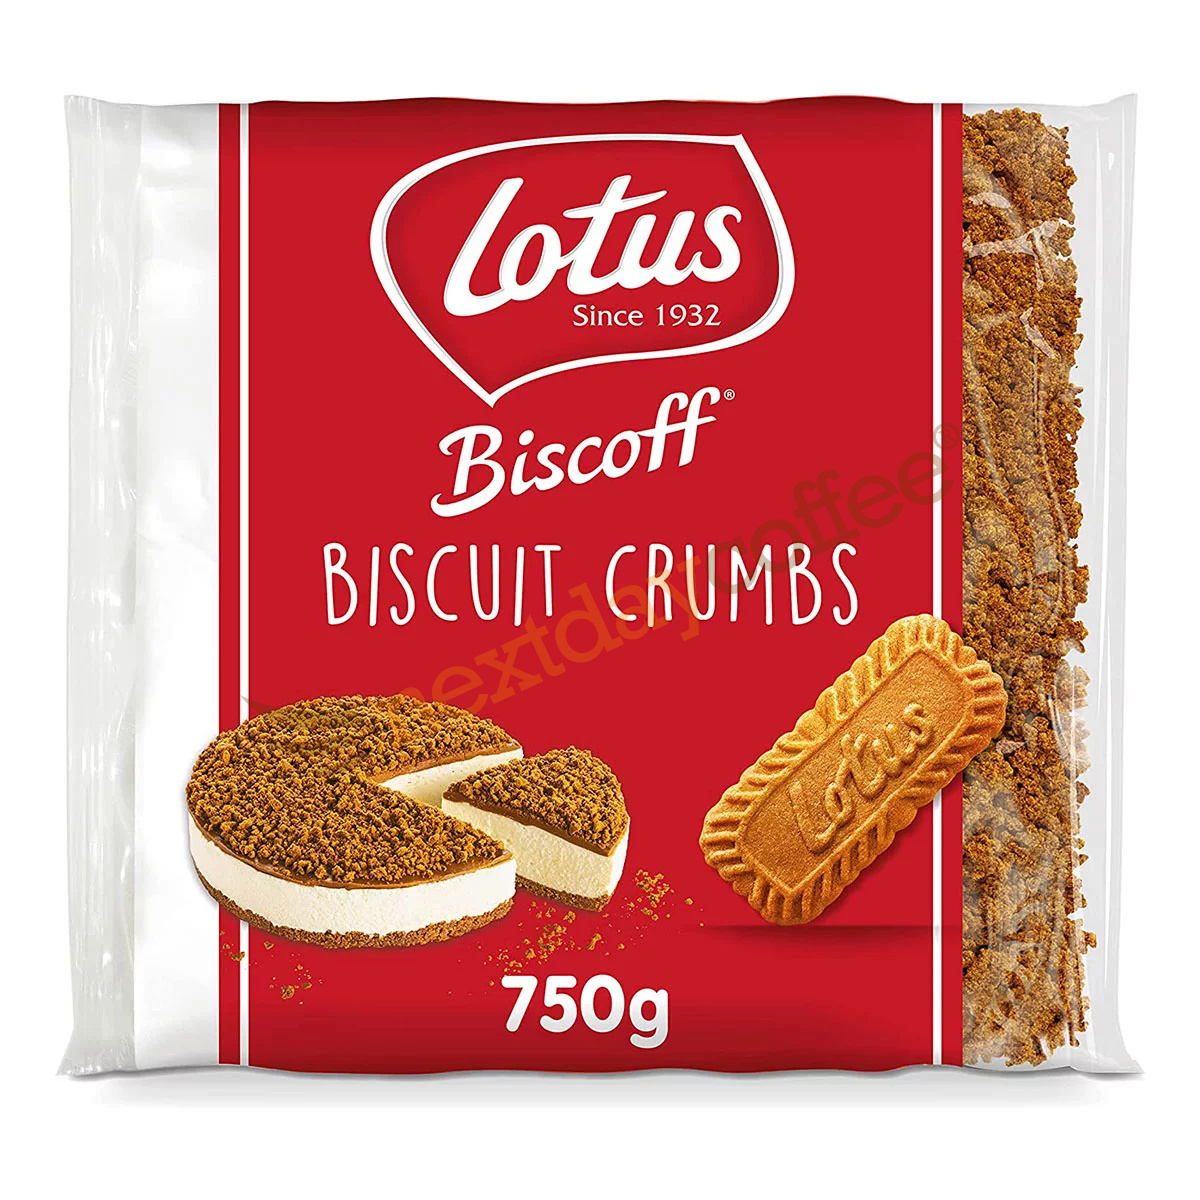 Lotus Biscoff Biscuit Crumbs (750g)